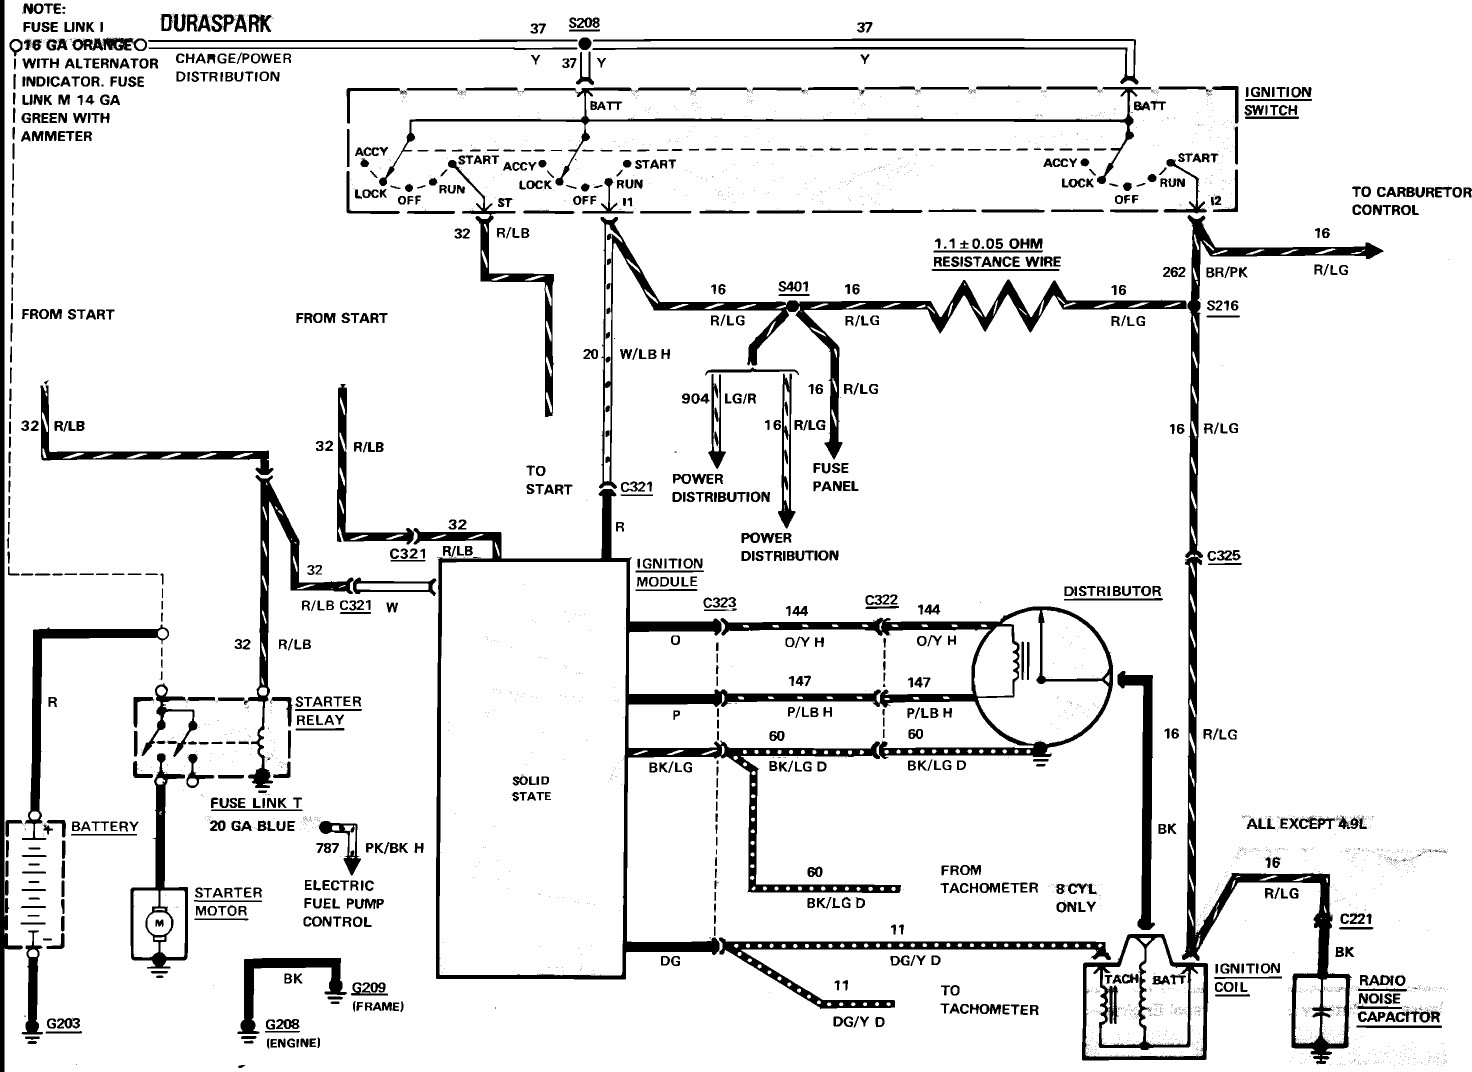 Ford 7.3 Alternator Wiring Diagram from schematron.org